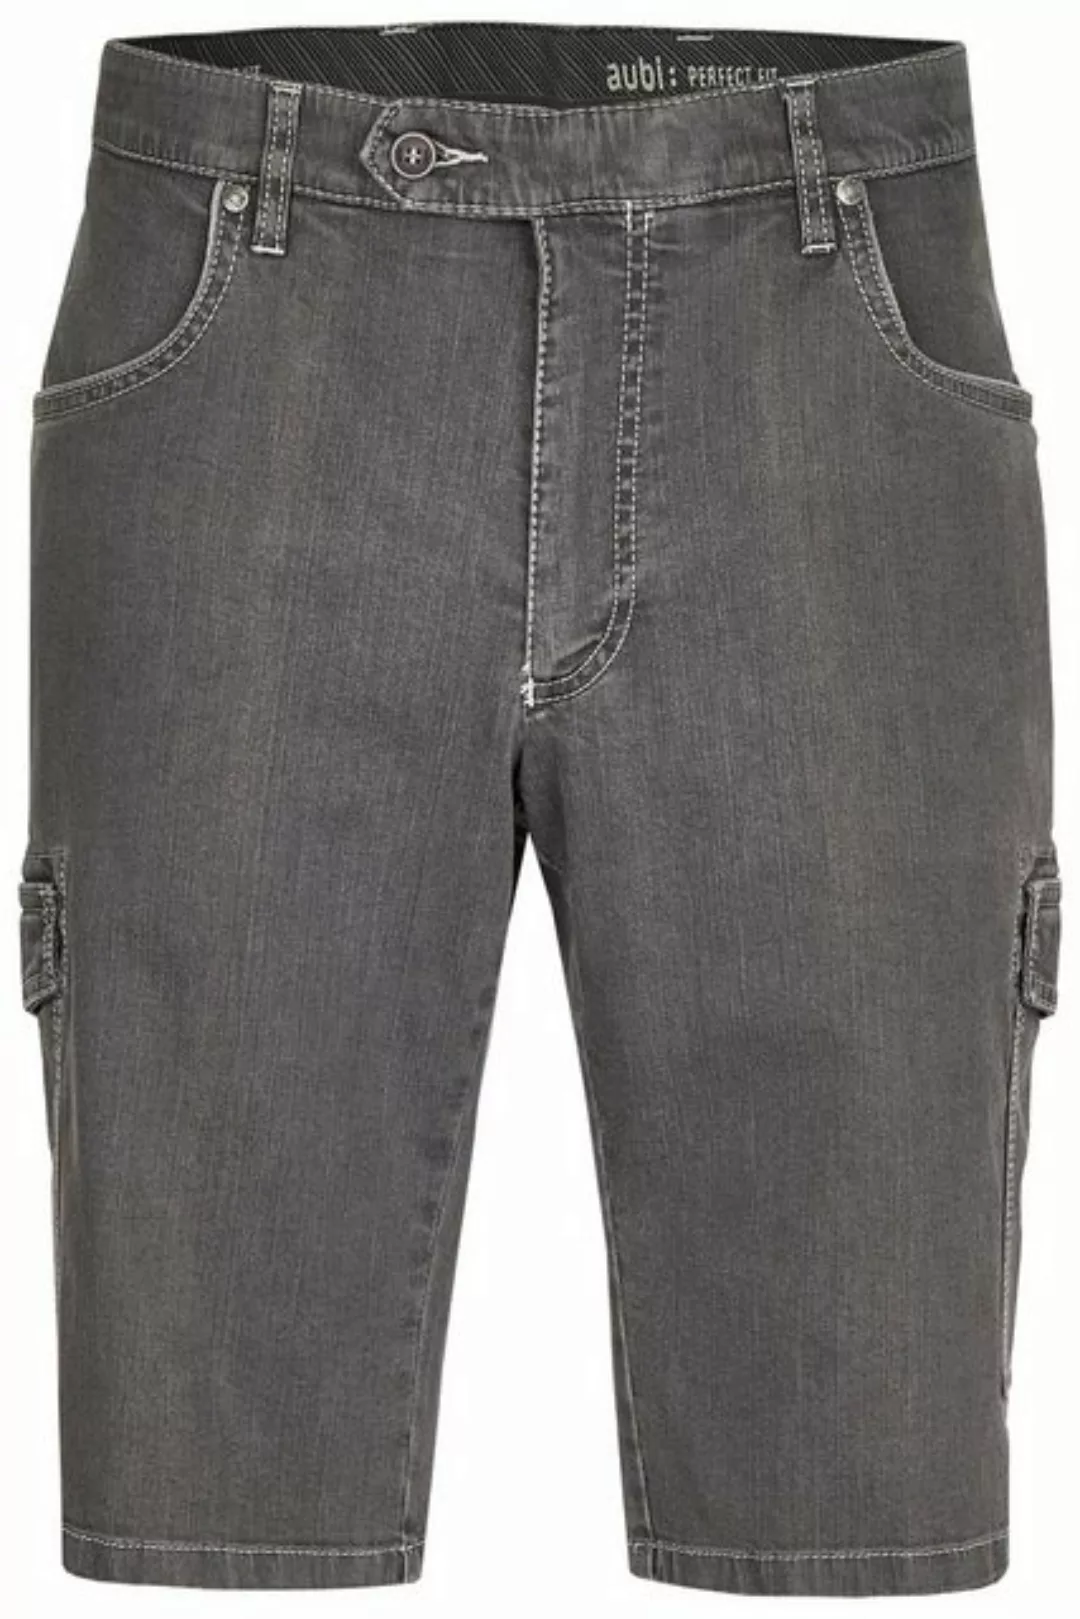 aubi: Bequeme Jeans aubi Perfect Fit Herren Sommer Jeans Cargo Shorts Stret günstig online kaufen